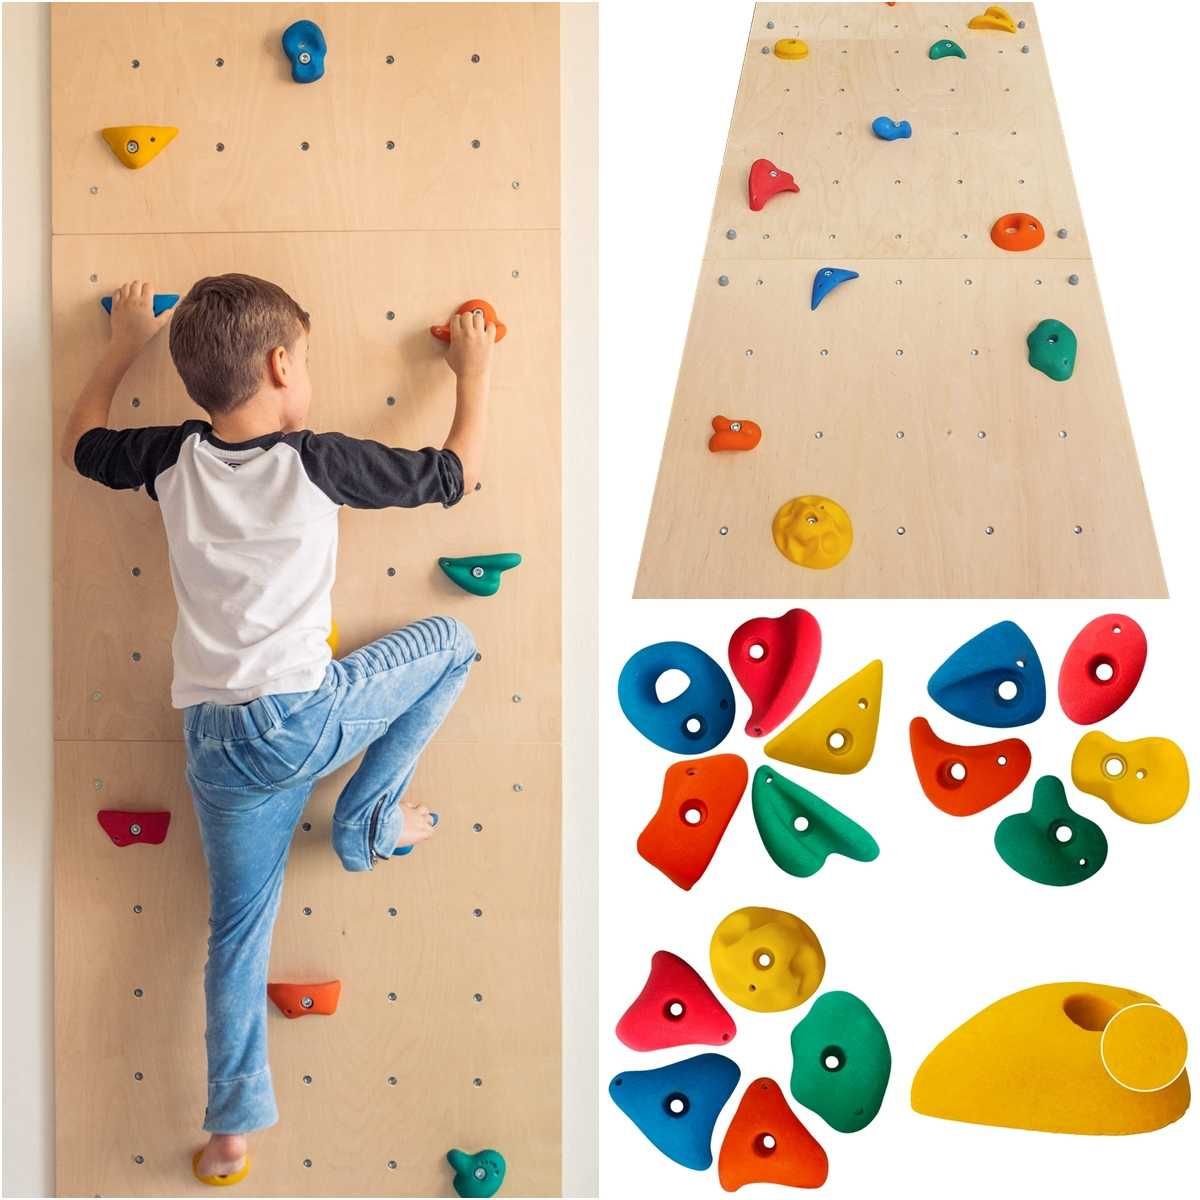 Ścianka wspinaczkowa dla dzieci domowa kamienie wspinaczkowe PRODUCENT